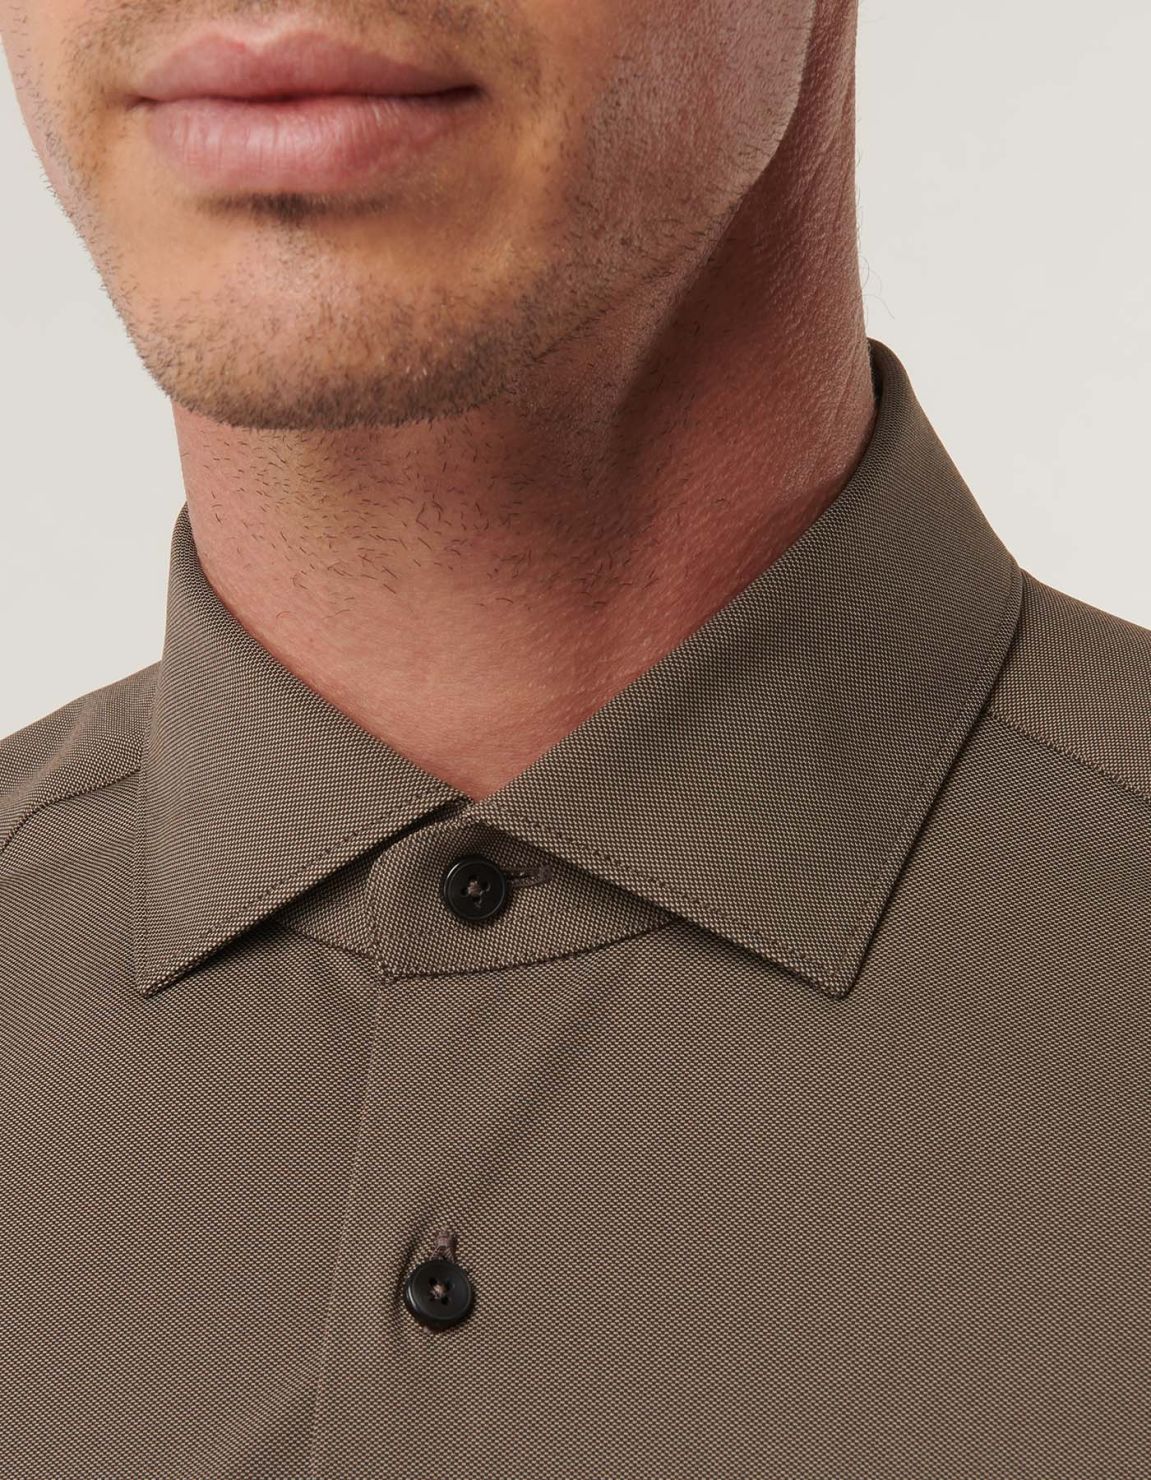 Camisa Cuello francés pequeño Liso Texturizado Marrón jaspeado Slim Fit 1